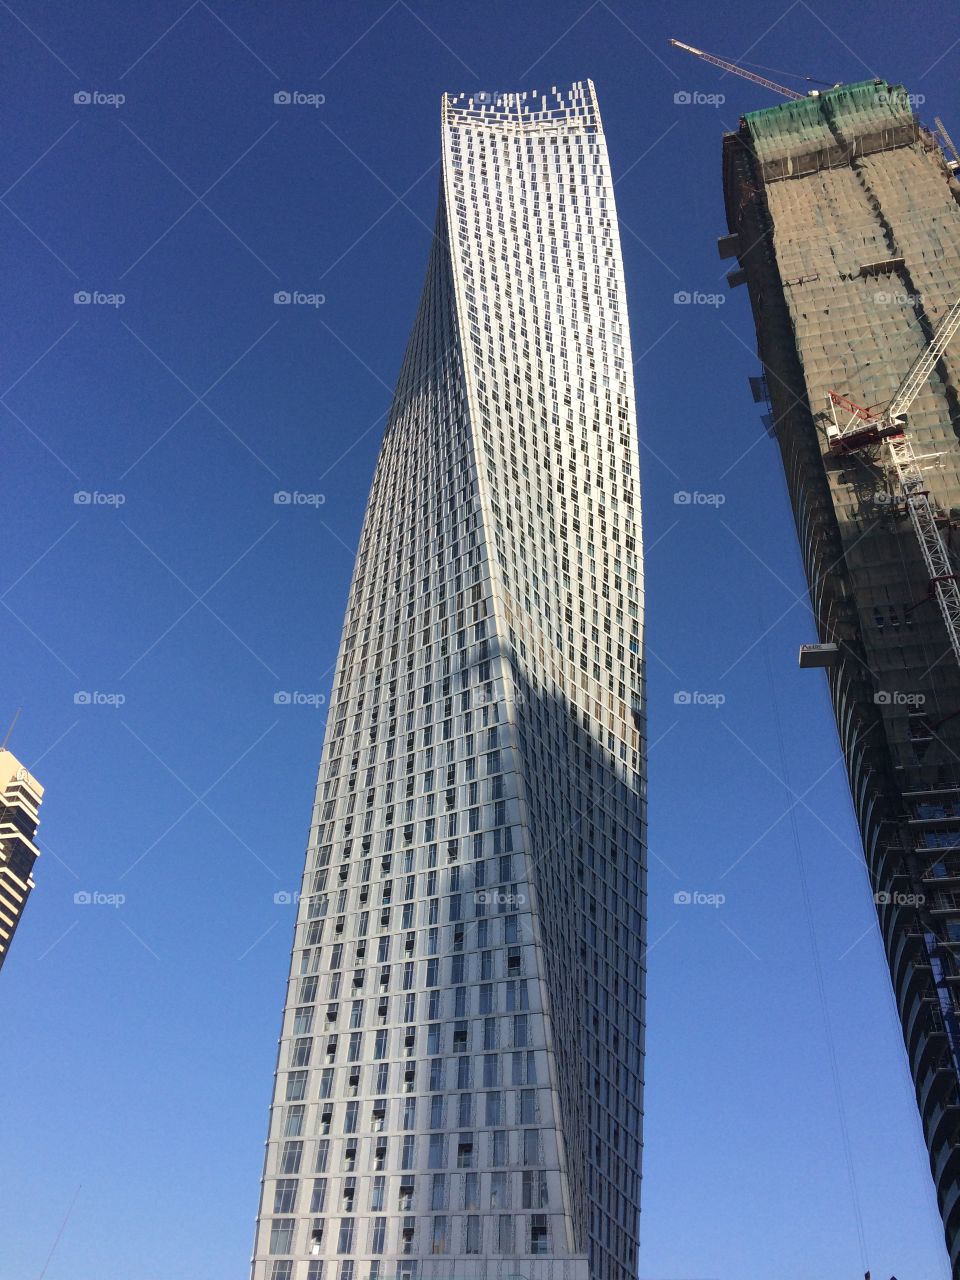 Dubai architecture 